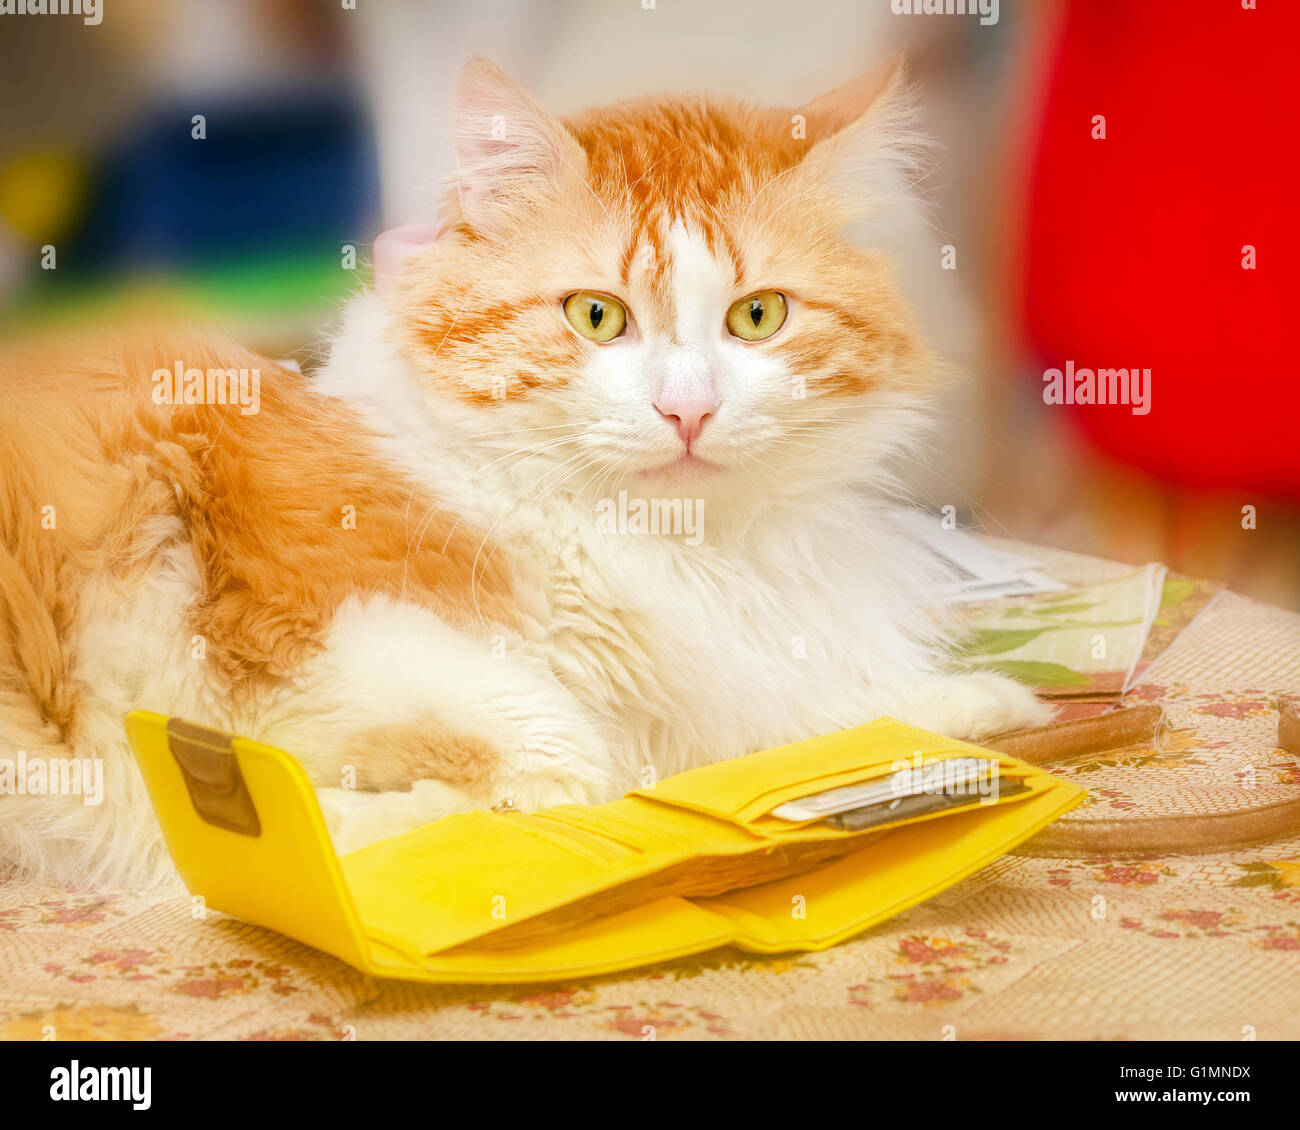 Nizza adulto gatto rosso e giallo in borsa Foto Stock